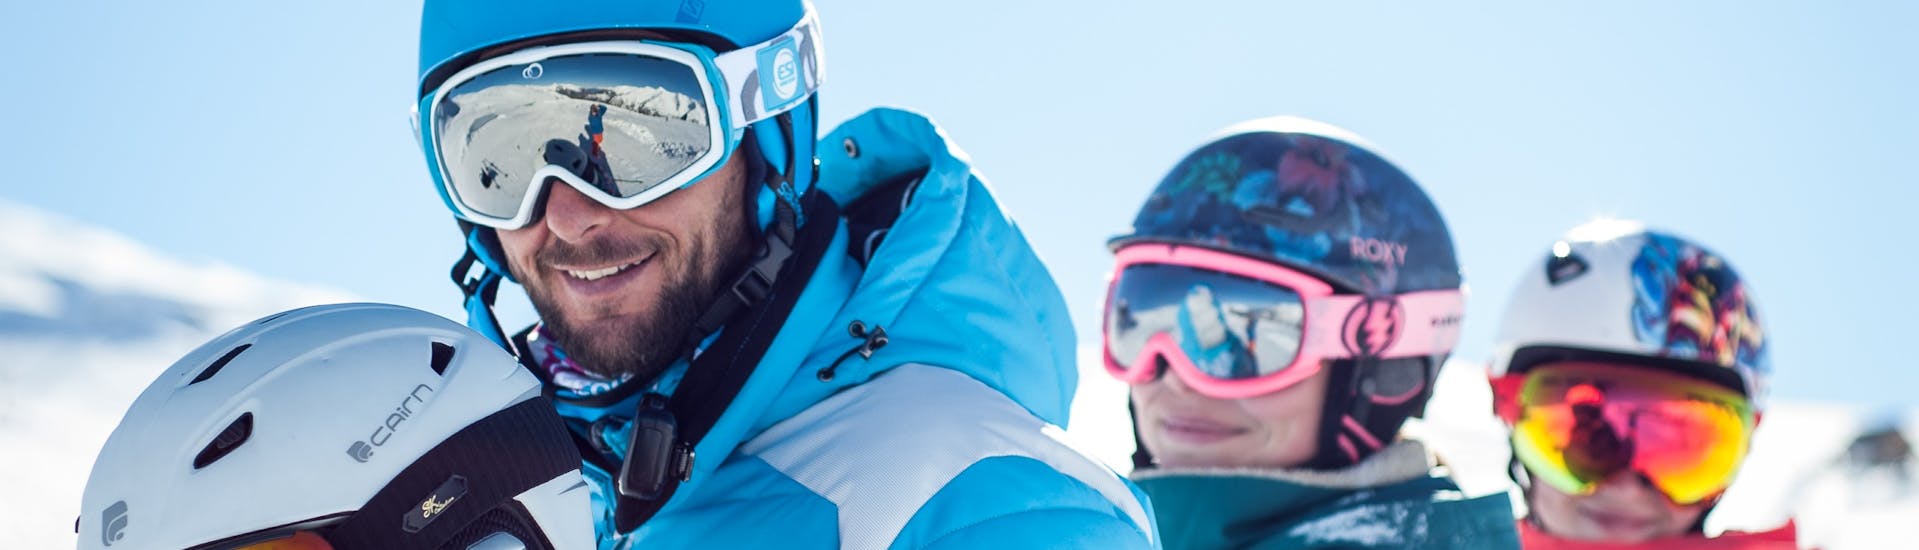 Un moniteur de ski de l'ESI Ozone les Orres prend une photo avec ses élèves après leurs Cours particulier de ski Enfants.